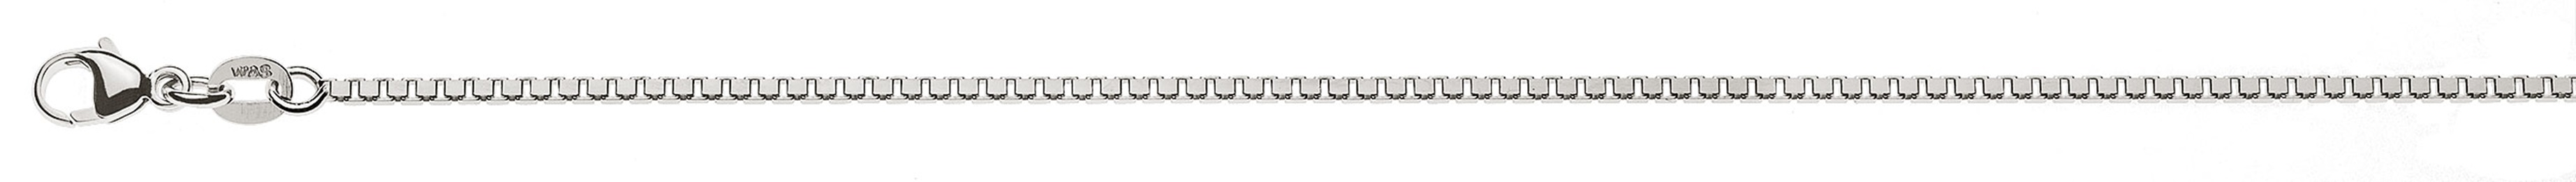 AURONOS Prestige Halskette Weissgold 18K Venezianerkette diamantiert 42cm 1.4mm